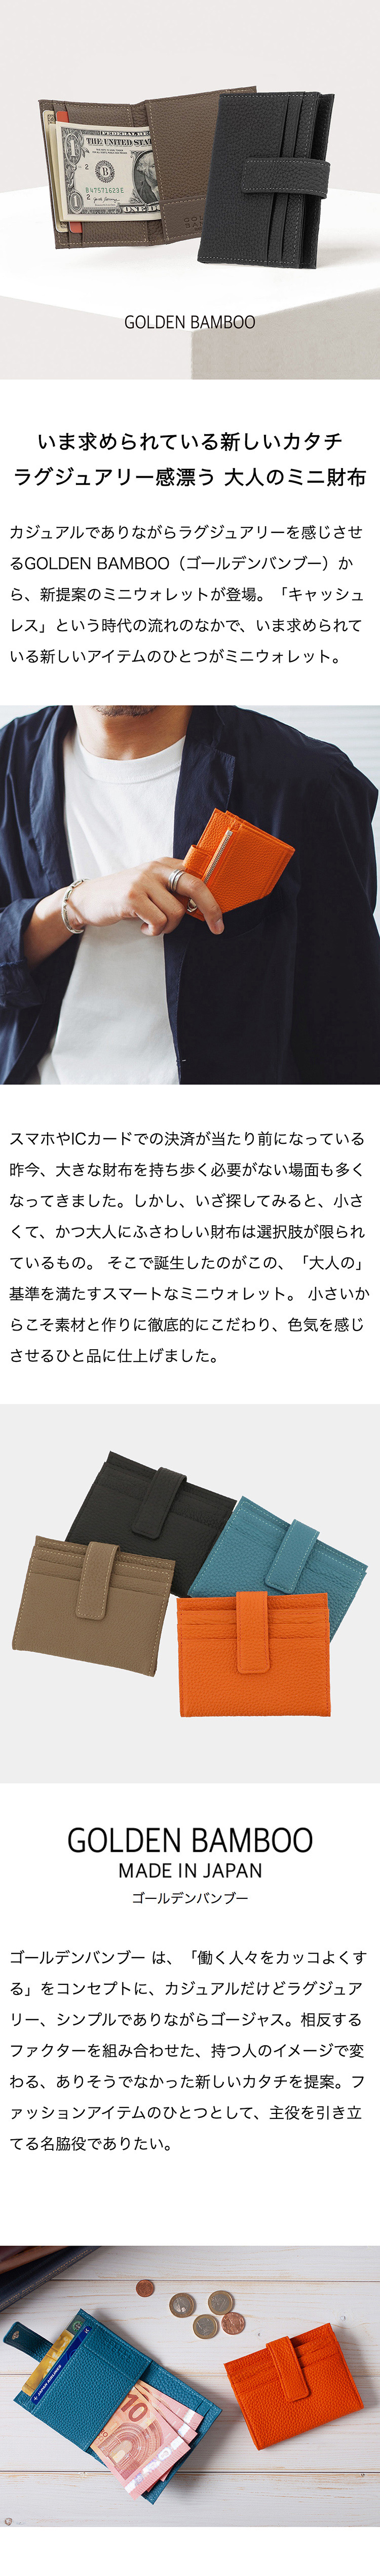 ゴールデンバンブー ミニ財布 メンズ Gb 243 日本製 Goldenbamboo コンパクト ドイツシュリンク レザー サックスバー ネット公式通販サイト